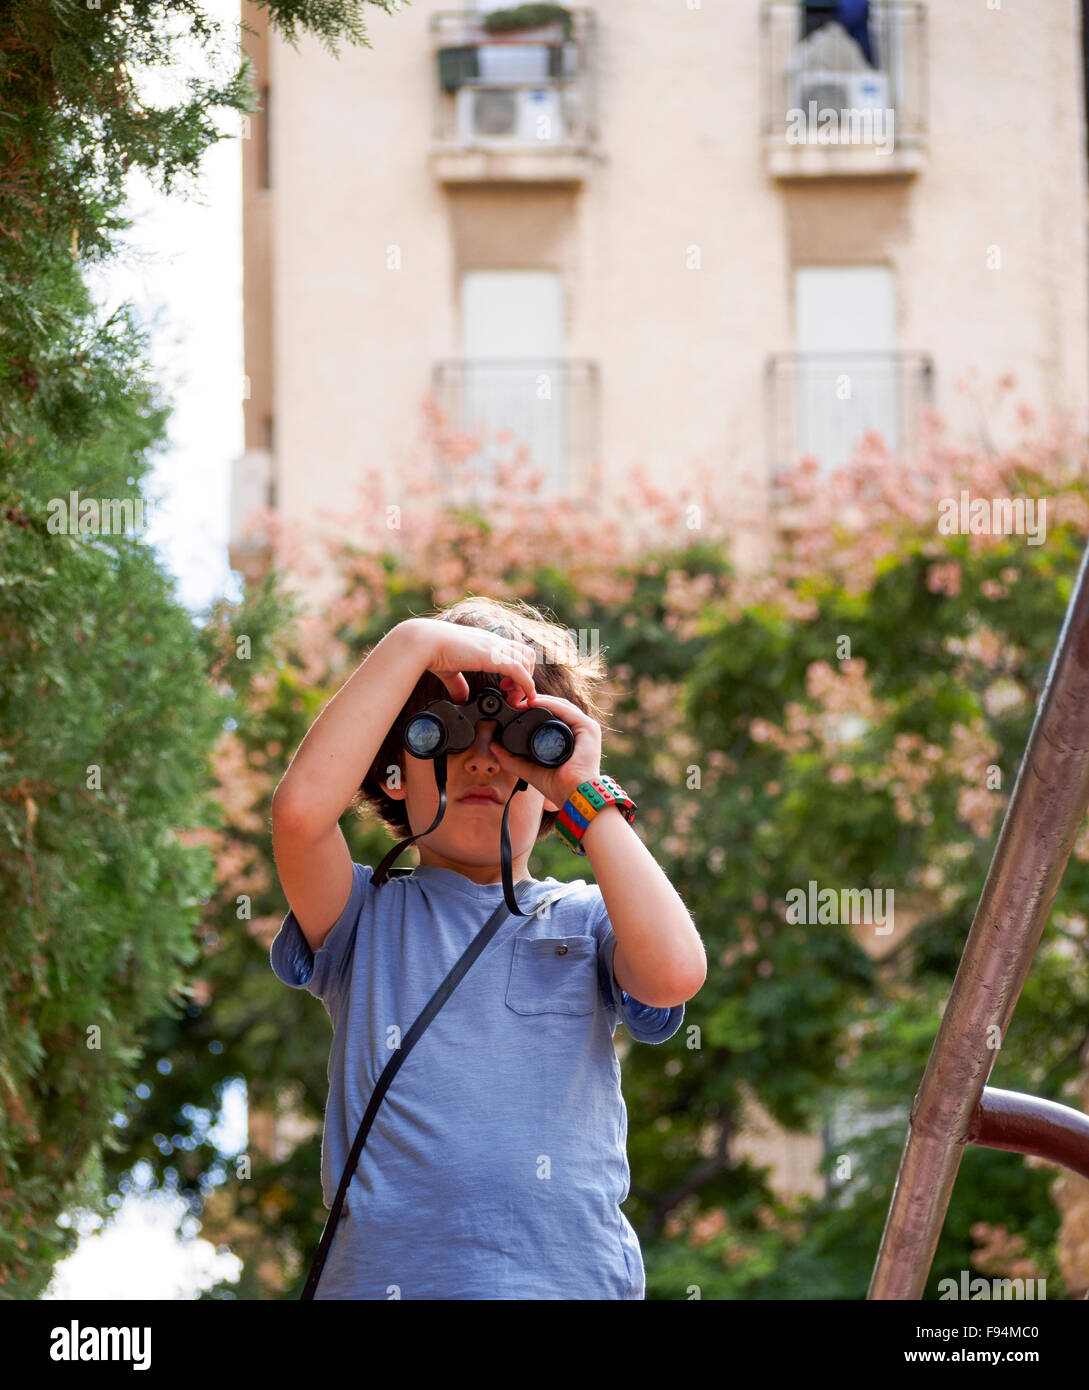 Birdwatcher joven un chico de siete años con prismáticos Foto de stock